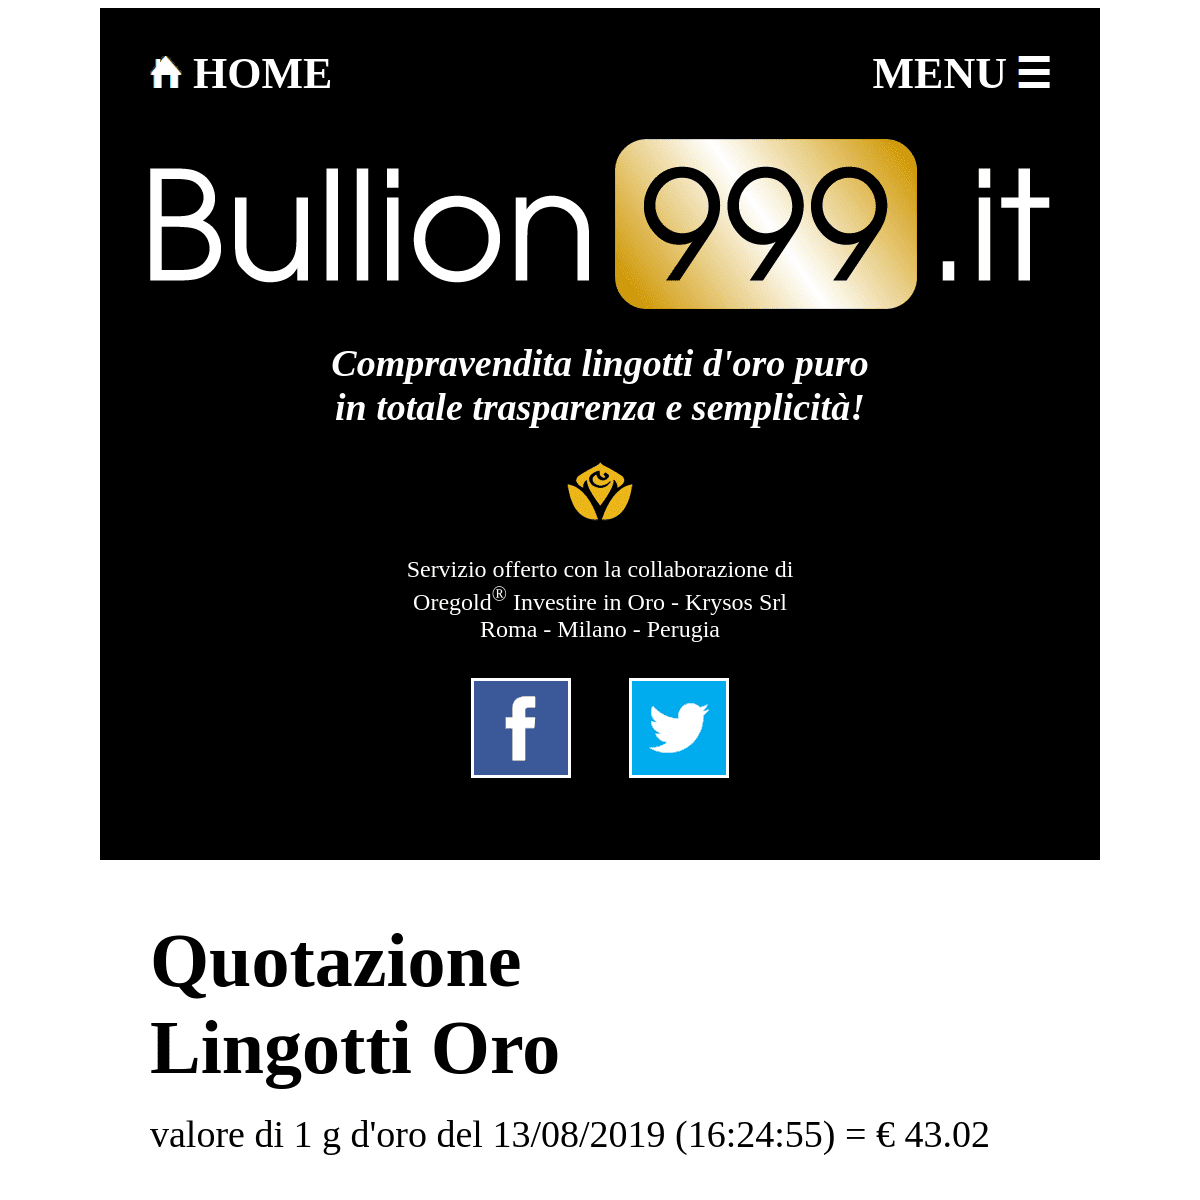 QUOTAZIONE LINGOTTI ORO - Acquisto Vendita - Valore 1g Oro = € 43.02